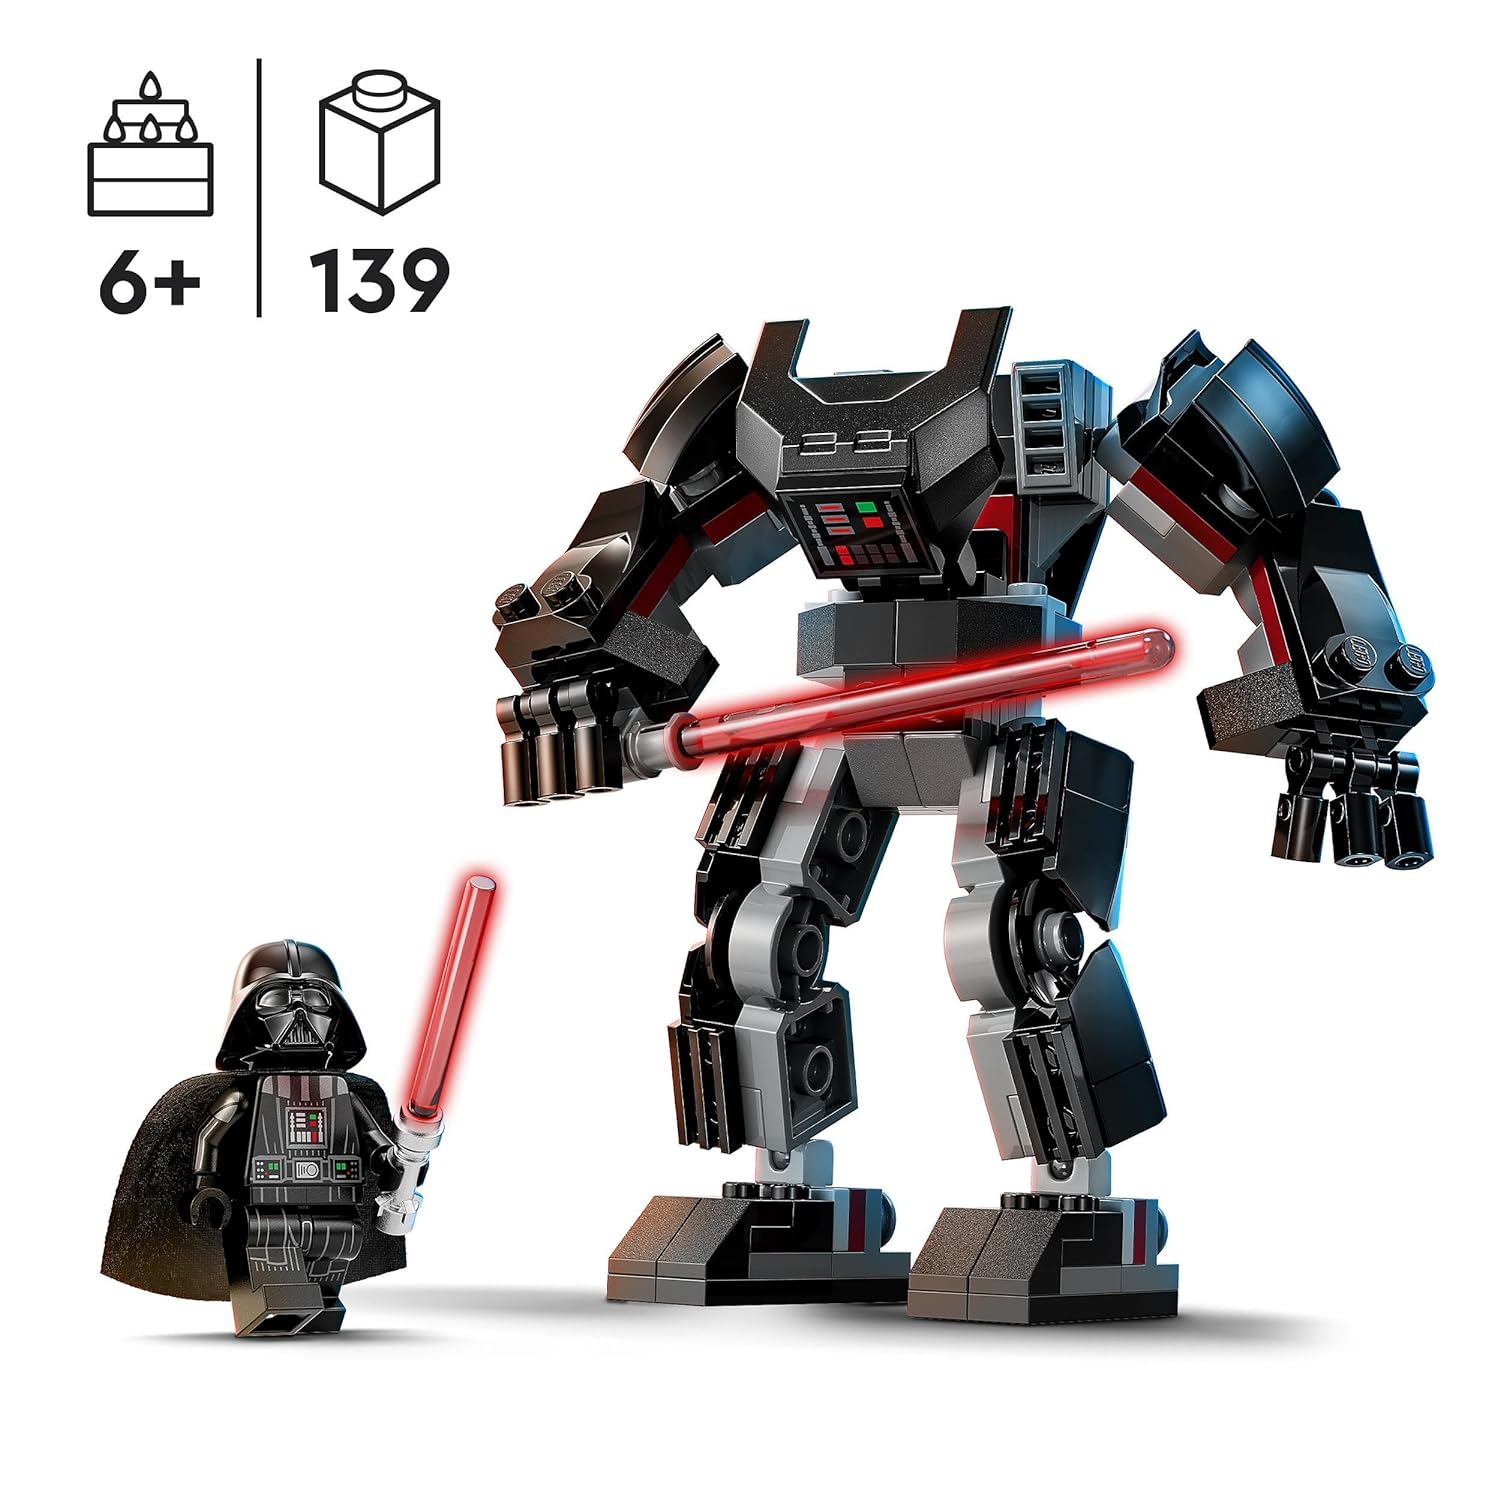 LEGO Star Wars Darth Vader Mech Building Kit for Ages 6+